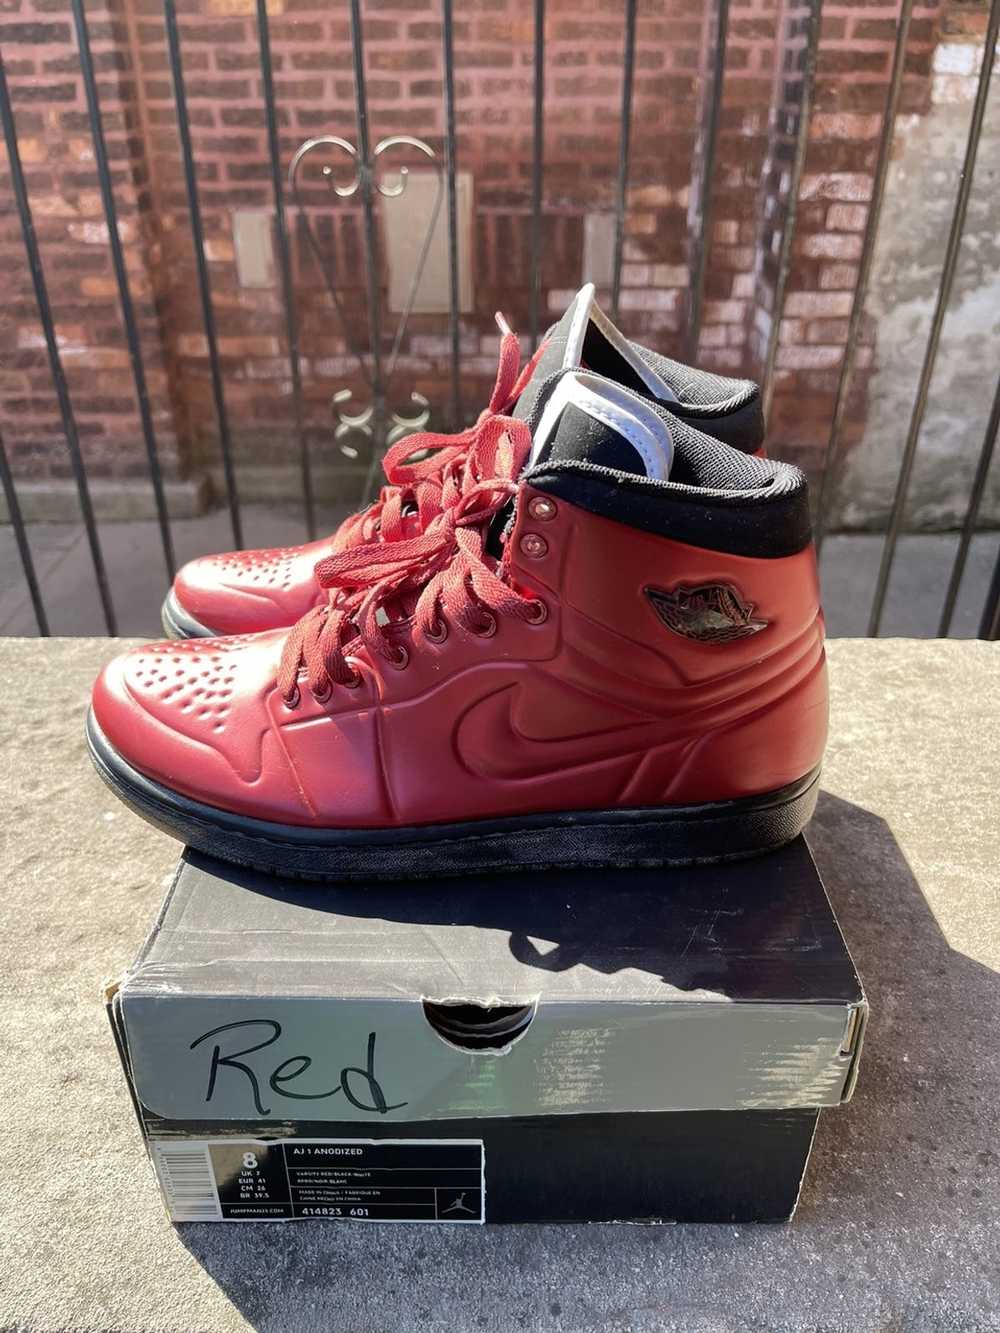 Jordan Brand × Nike Air Jordan 1 “Anodized Red” - image 2